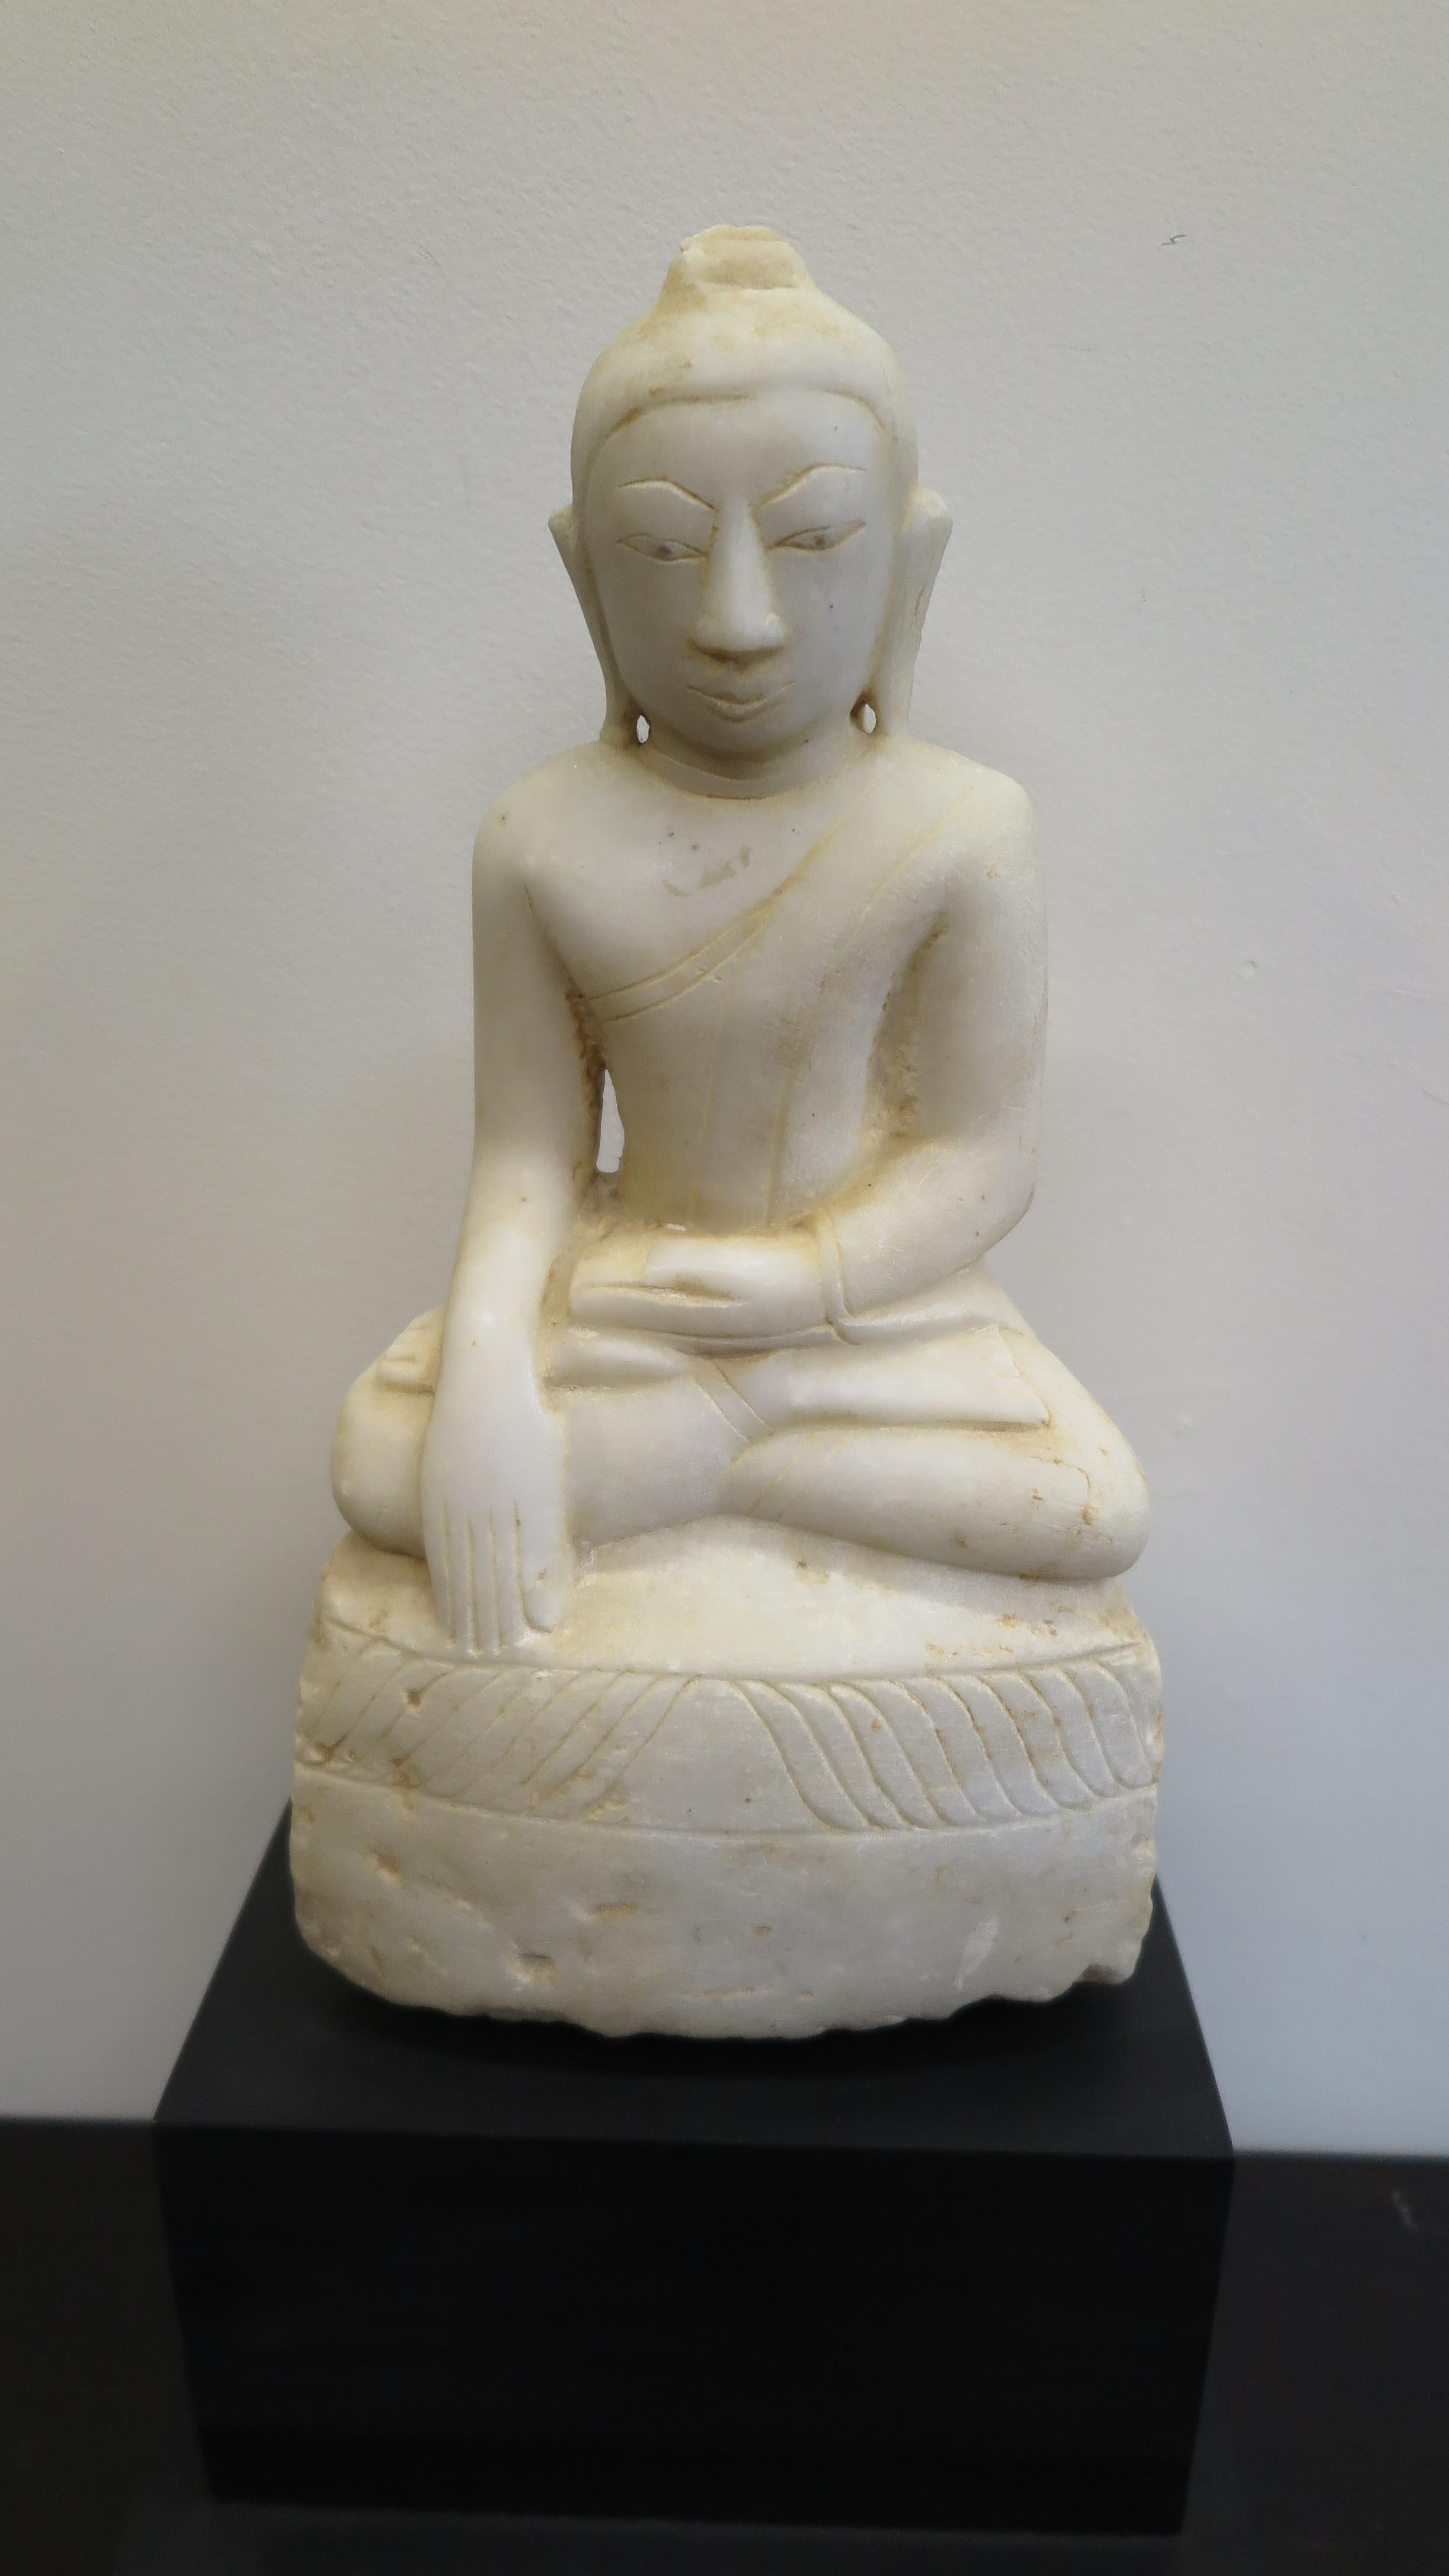 Buddha-Statue aus dem 18./19. Jahrhundert, geschnitzt aus Alabaster. Birmesische Shan-Buddha-Statue 1800ca, gesammelt im Shan-Staat Myanmar 1998. Die Beine sind gekreuzt, die linke Hand liegt im Schoß, die rechte Hand zeigt auf den Boden, die